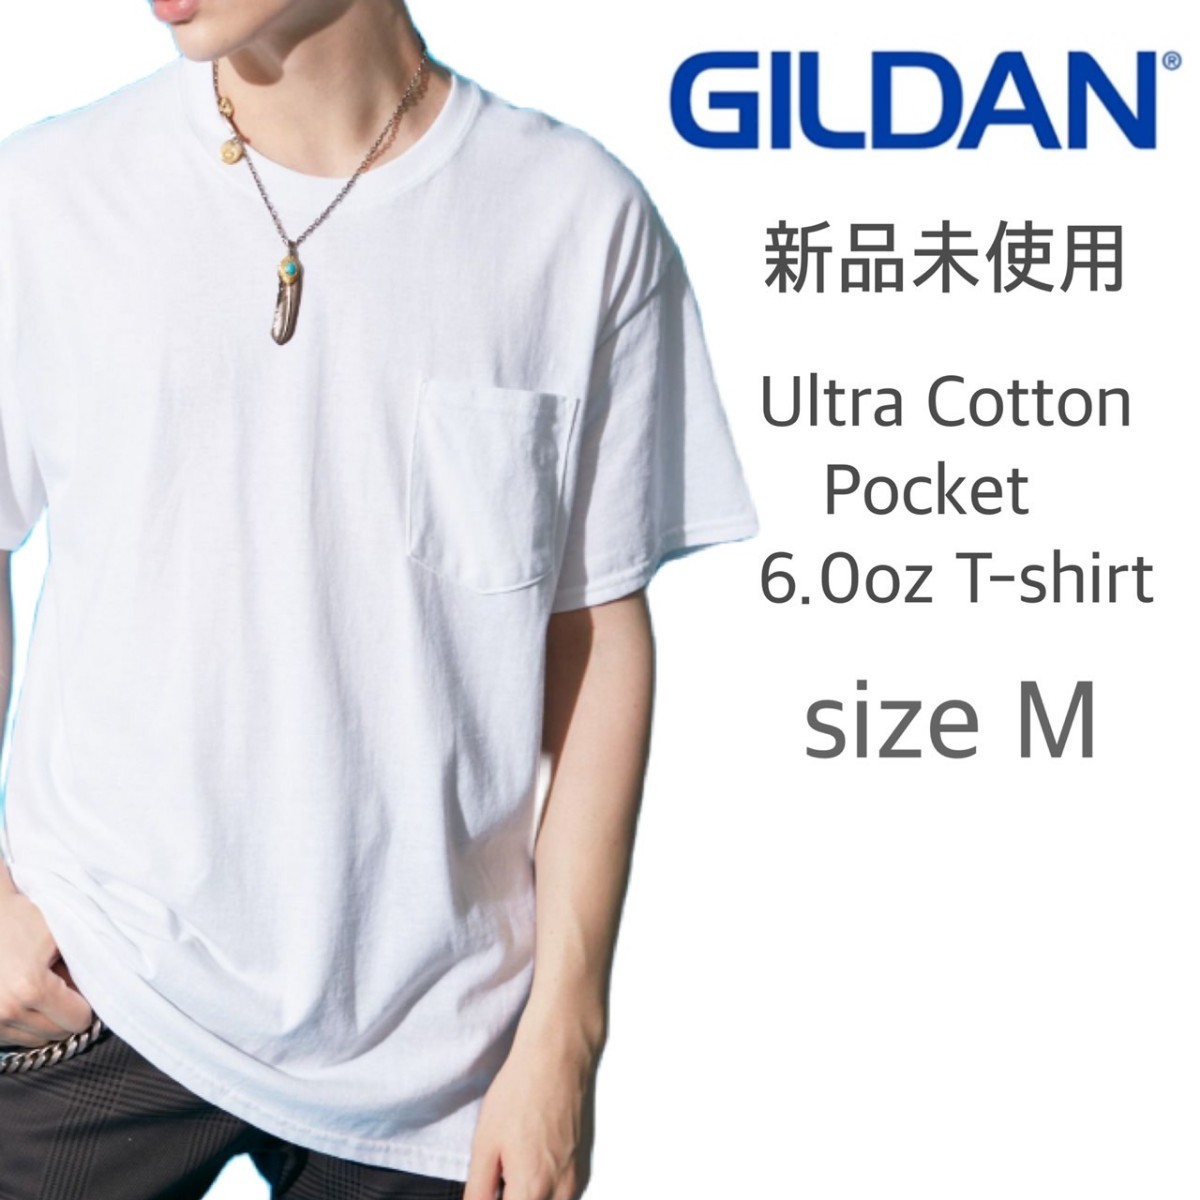 新品未使用 ギルダン ウルトラコットン 6.0oz 無地 ポケットTシャツ ホワイト 白 Ｍサイズ GILDAN 2300